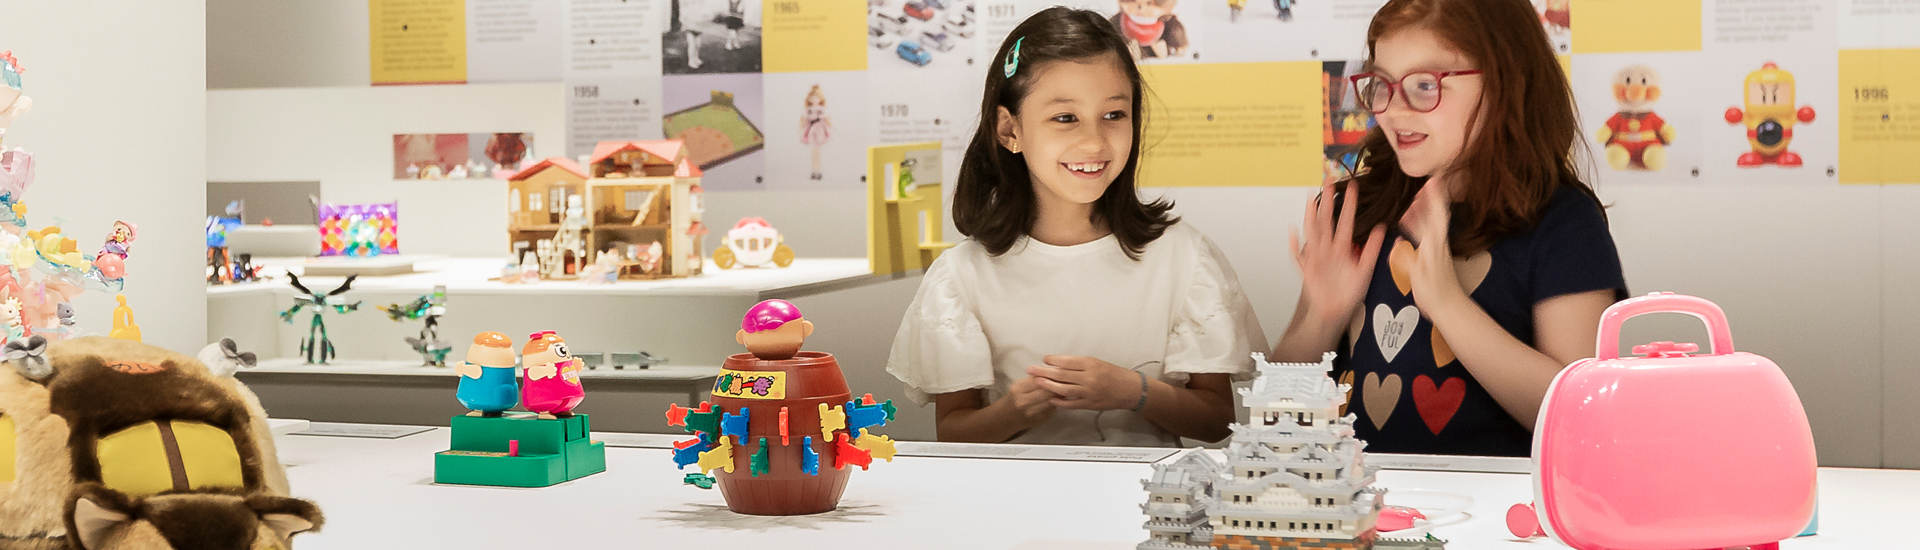 Duas meninas olhando os brinquedos expostos sobre mesa branca na exposição ‘Dōshin: os encantos dos brinquedos japoneses’, em cartaz na JHSP.